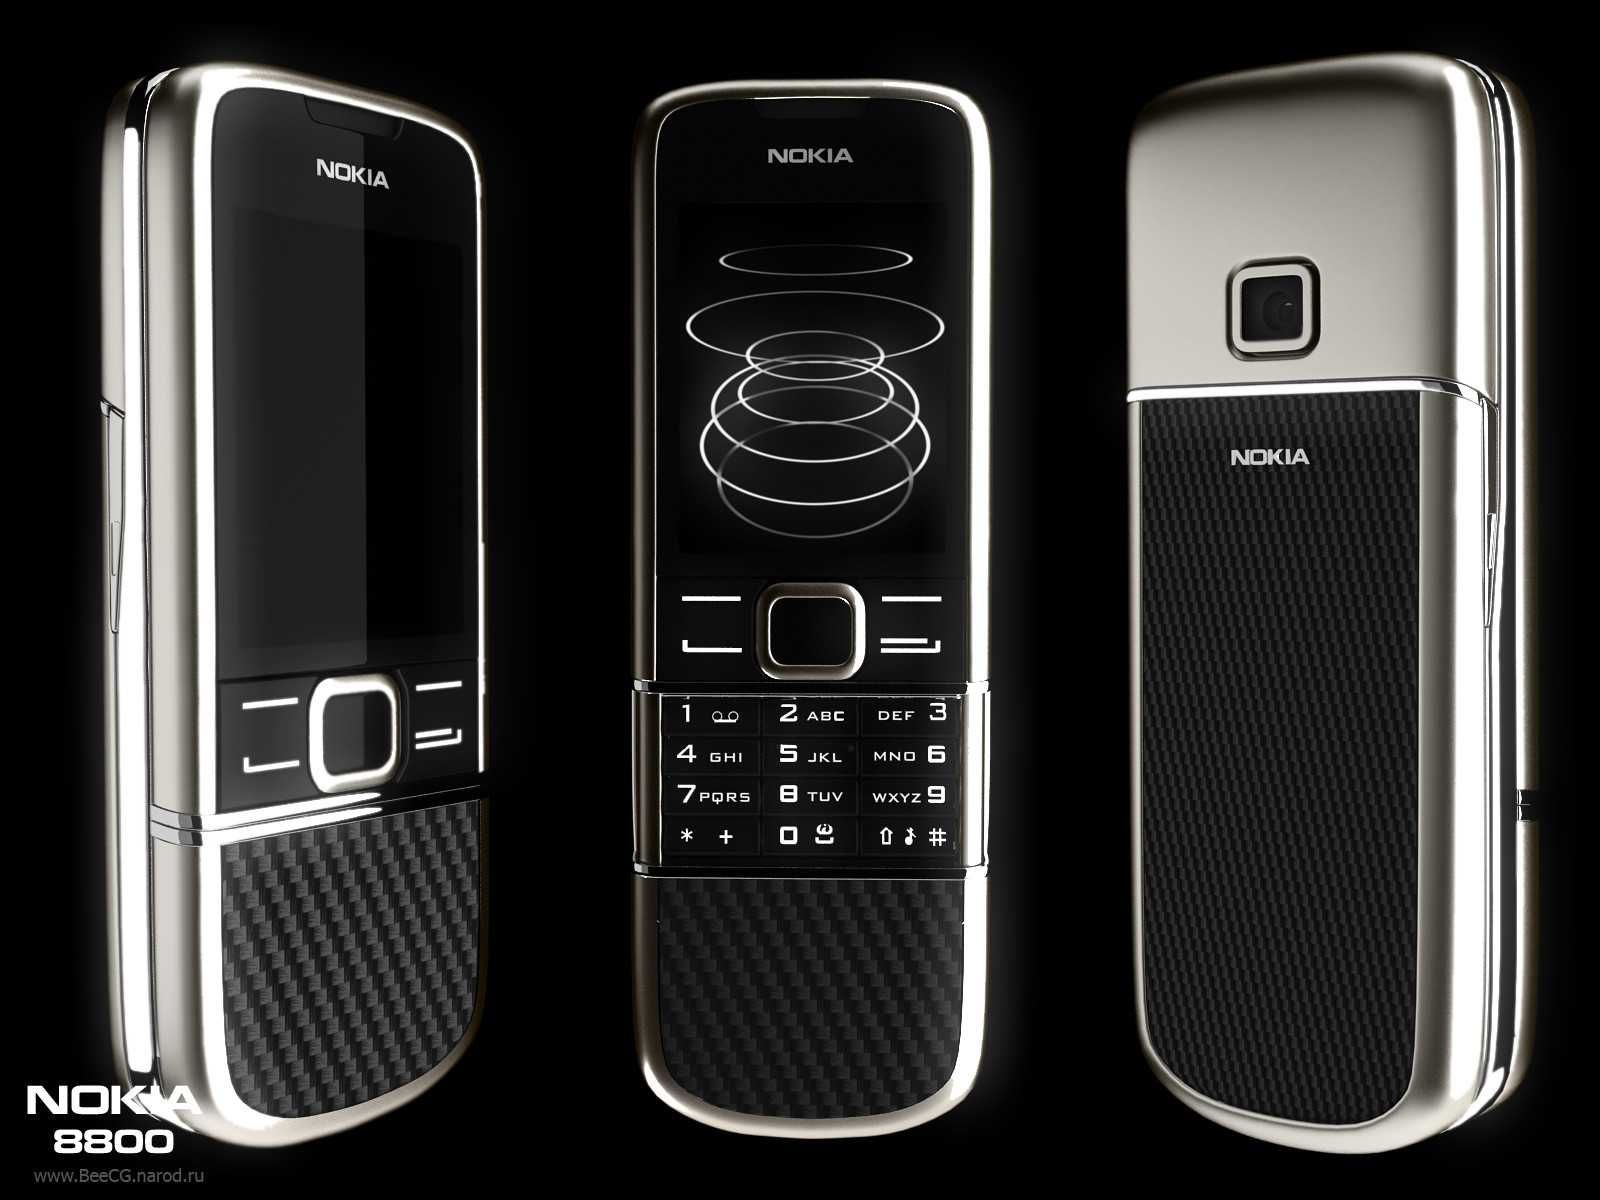 NOKIA 8800 Carbon Arte: Trải nghiệm điện thoại siêu sang chất lượng cao chỉ trong một cú nhấp chuột! Nokia 8800 Carbon Arte với thiết kế vững chắc, chất liệu sang trọng mà còn được trang bị nhiều tính năng hiện đại. Dành cho những ai yêu thích sự khác biệt và đam mê công nghệ.